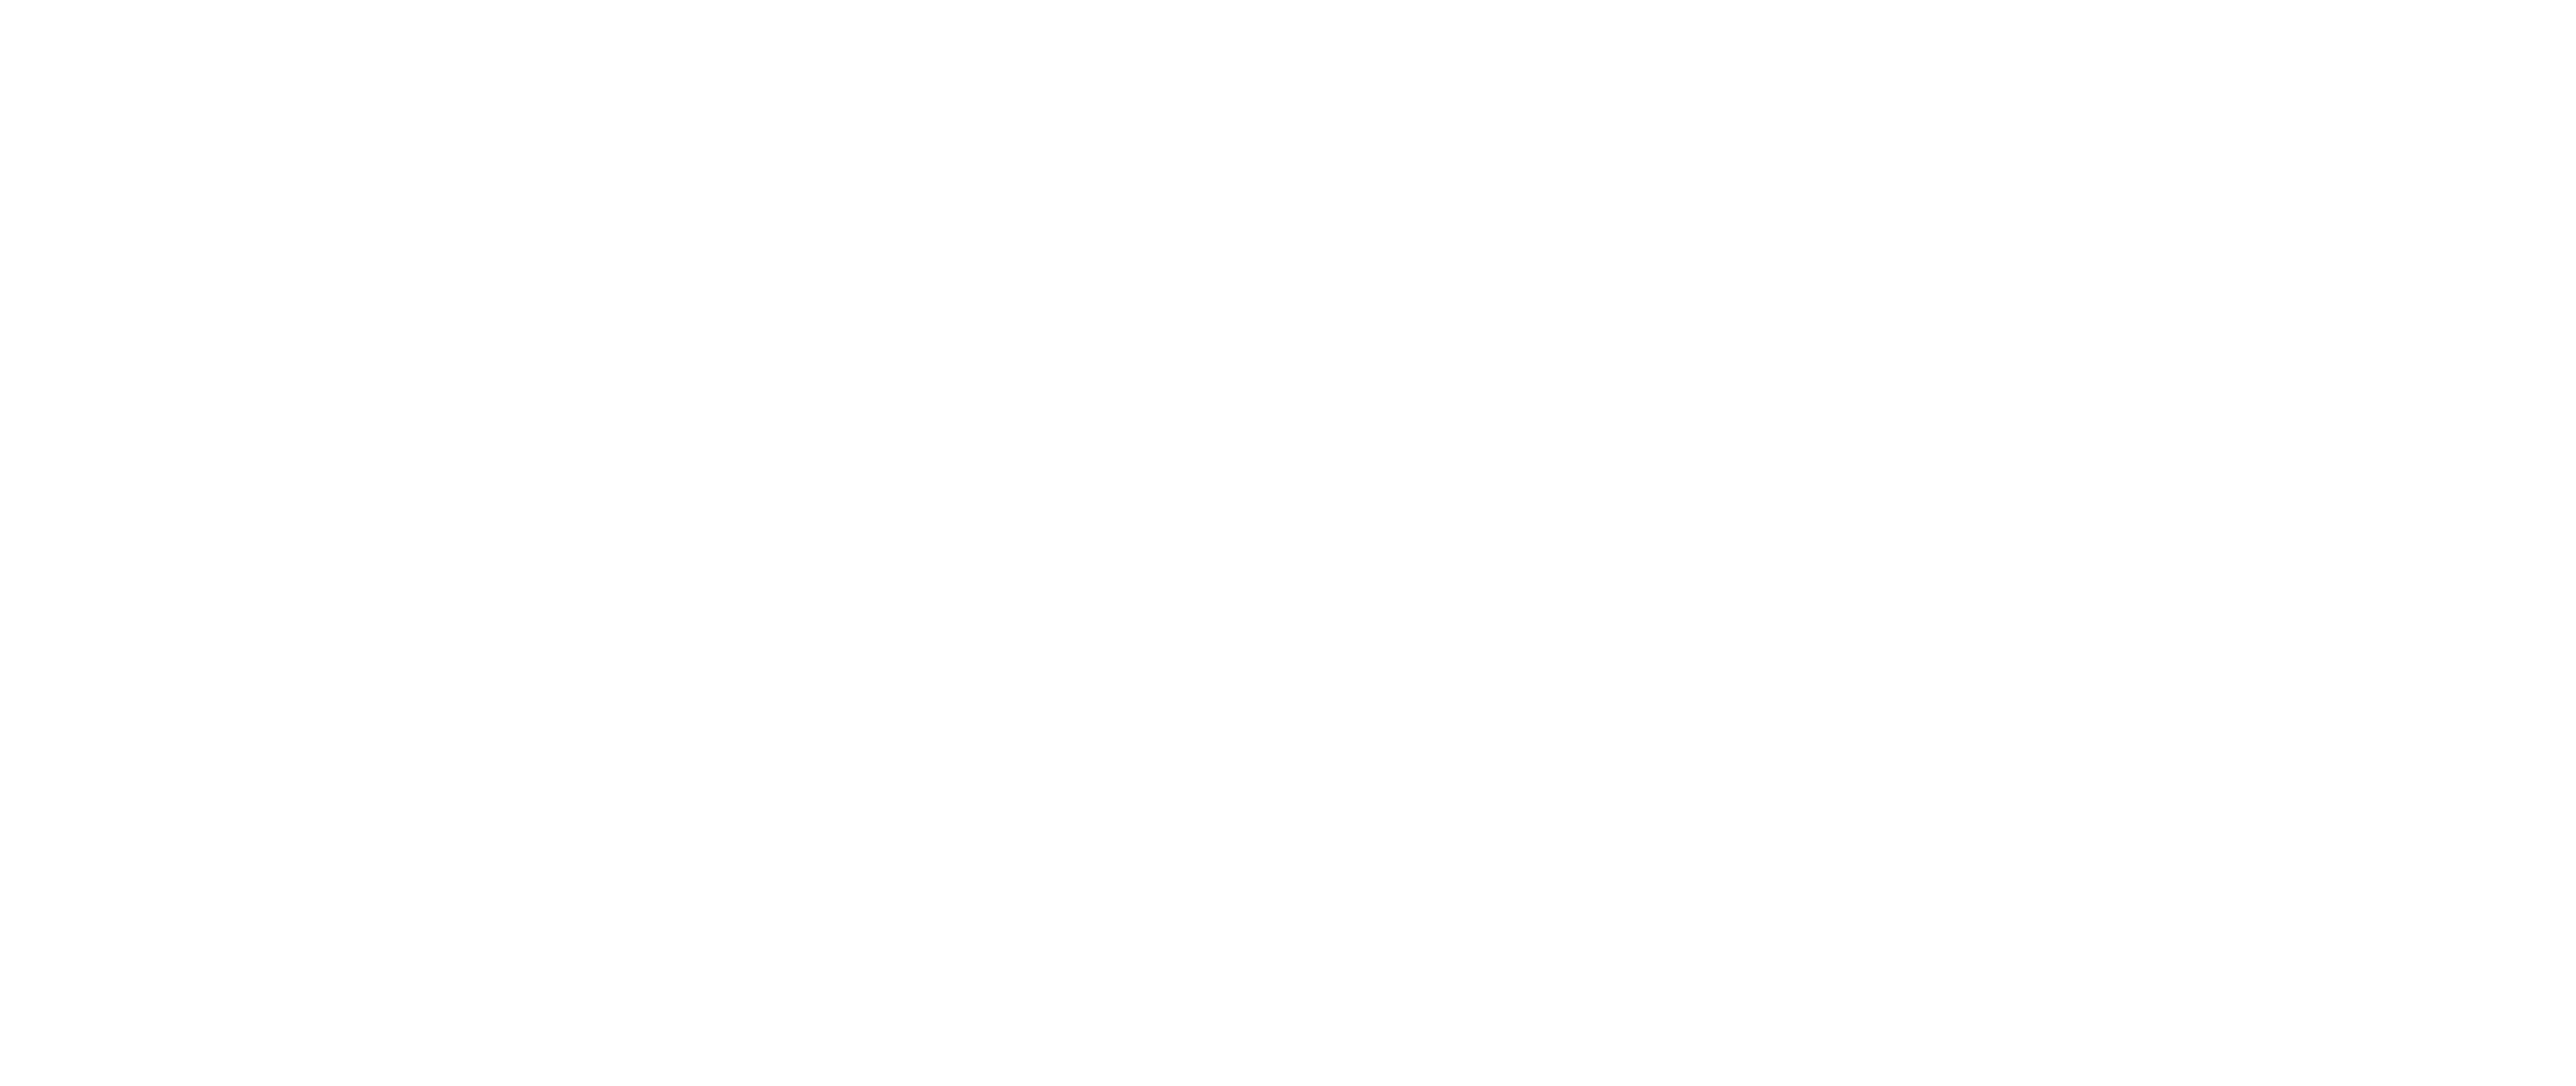 datacake cloud